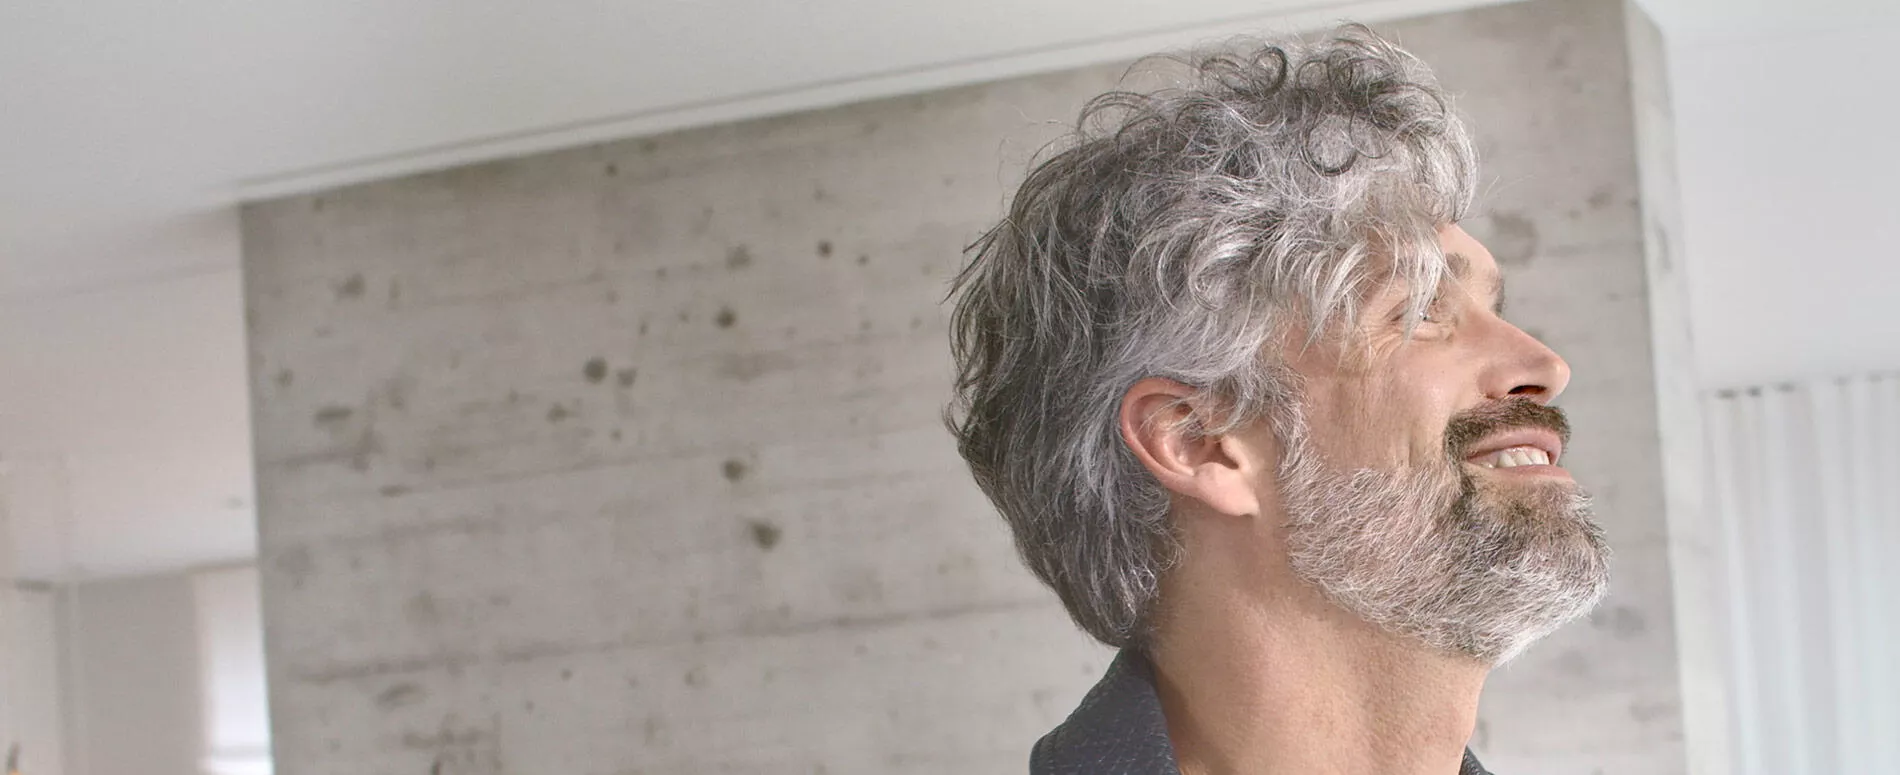 Профиль мужчины с волосами, частично обработанными silver glow с использованием Wella Professionals True Grey